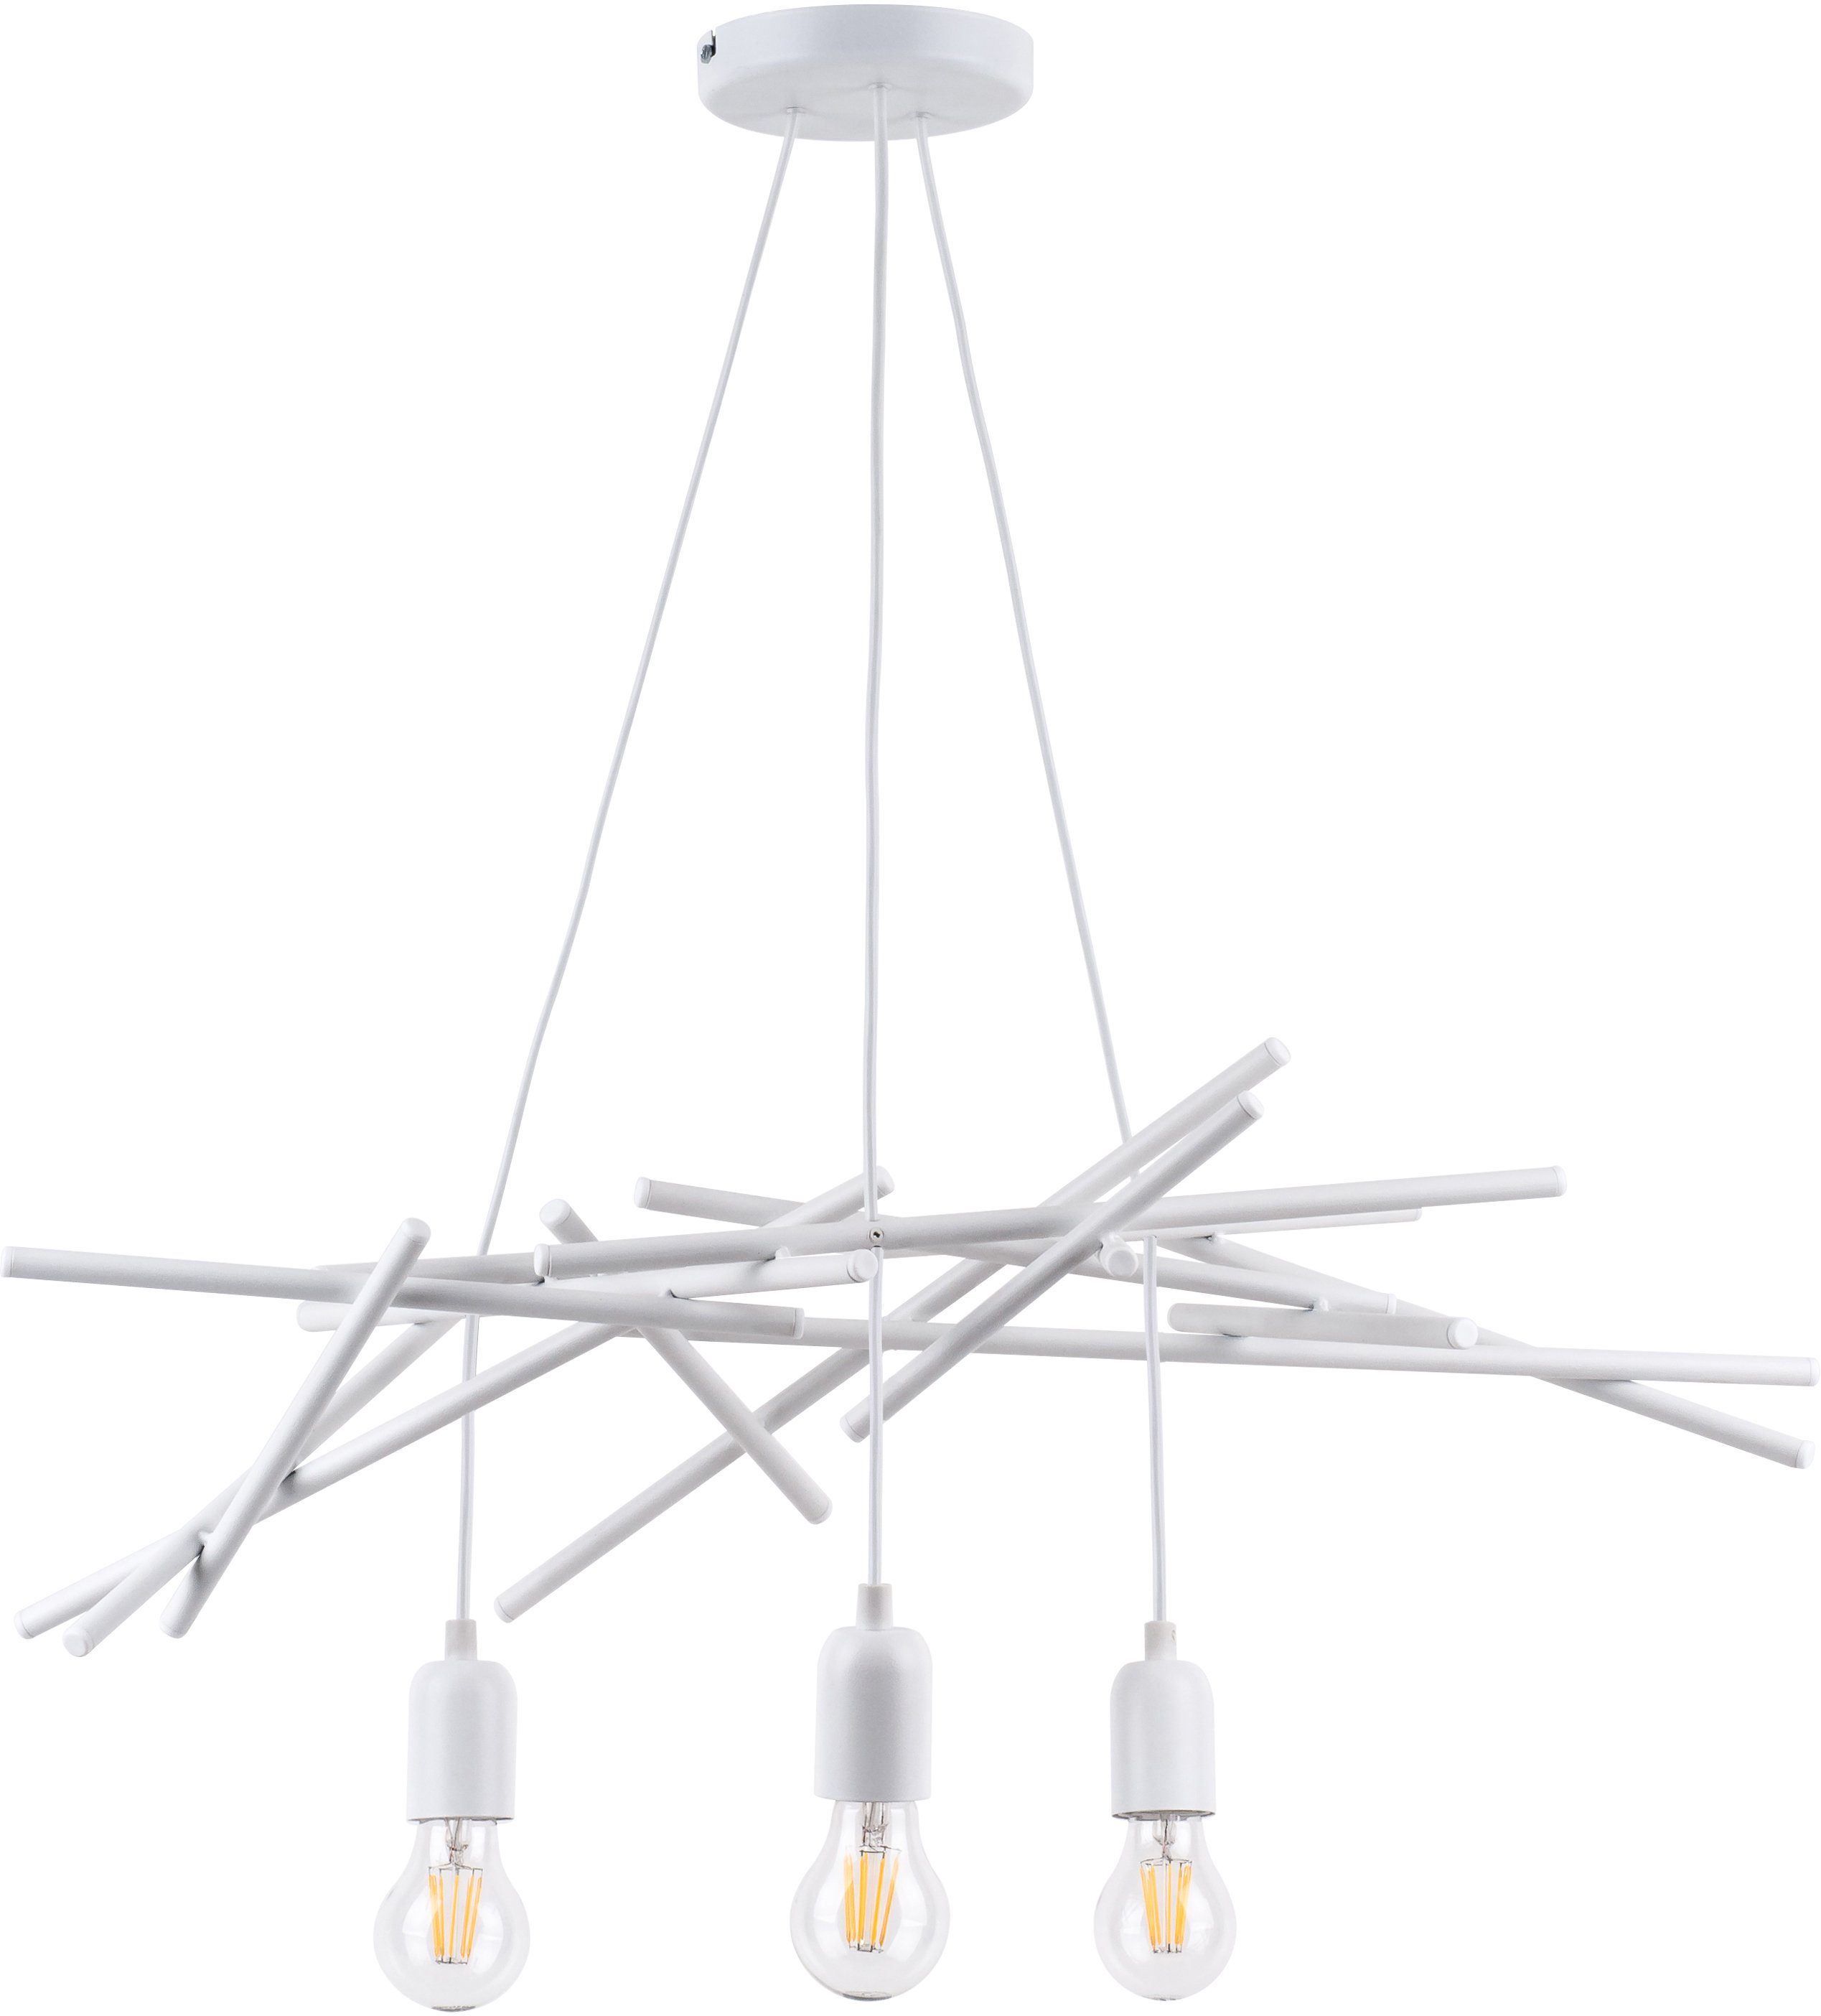 SPOT Light Hanglamp GLENN van metaal, origineel design, bijpassende lm e27, made in eu (1 stuk)